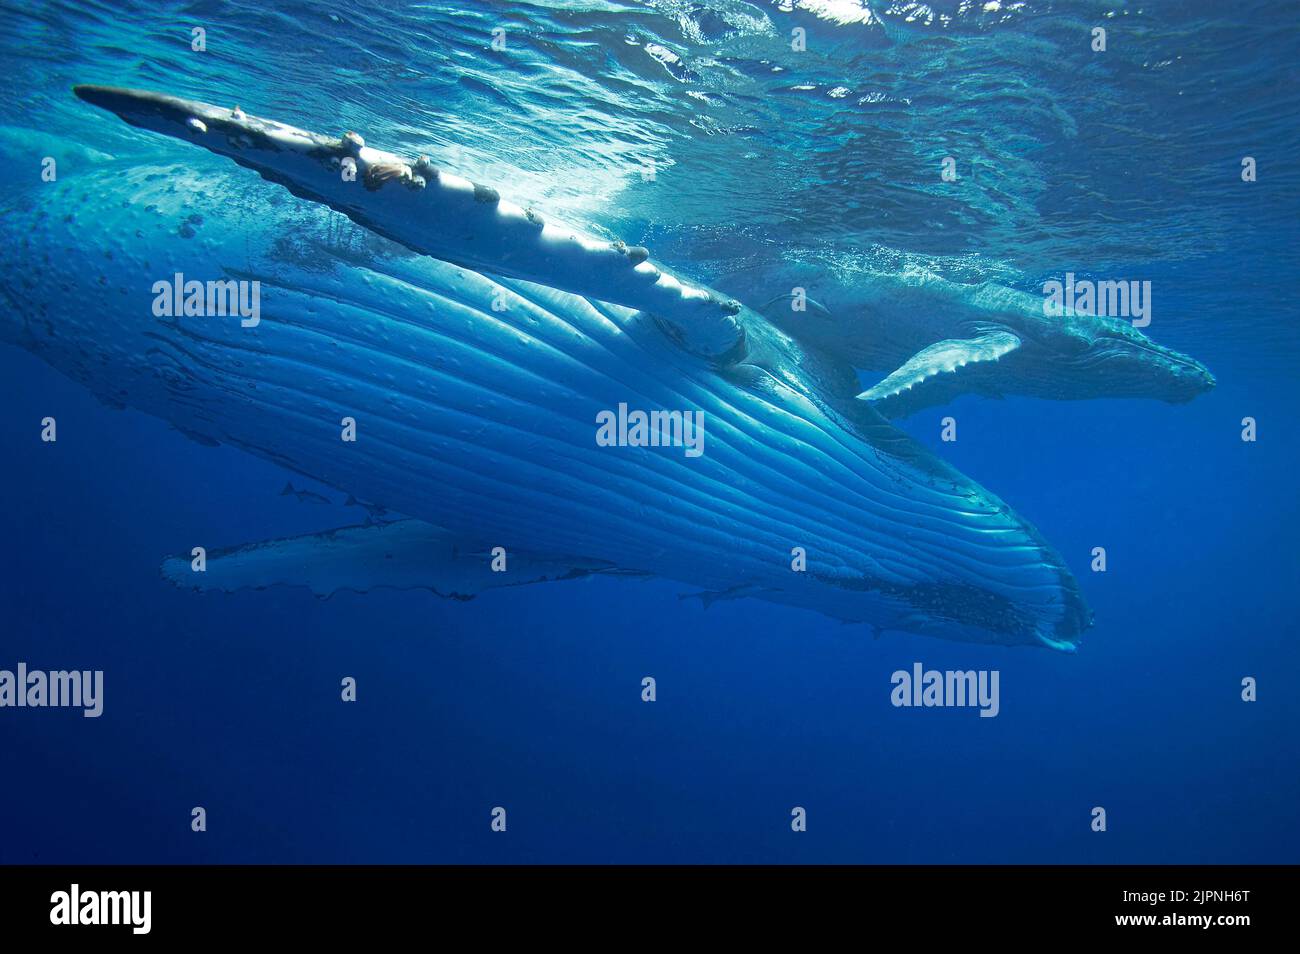 Baleine à bosse (Megaptera novaeangliae) avec veau, Silverbanks, République dominicaine, Caraïbes Banque D'Images